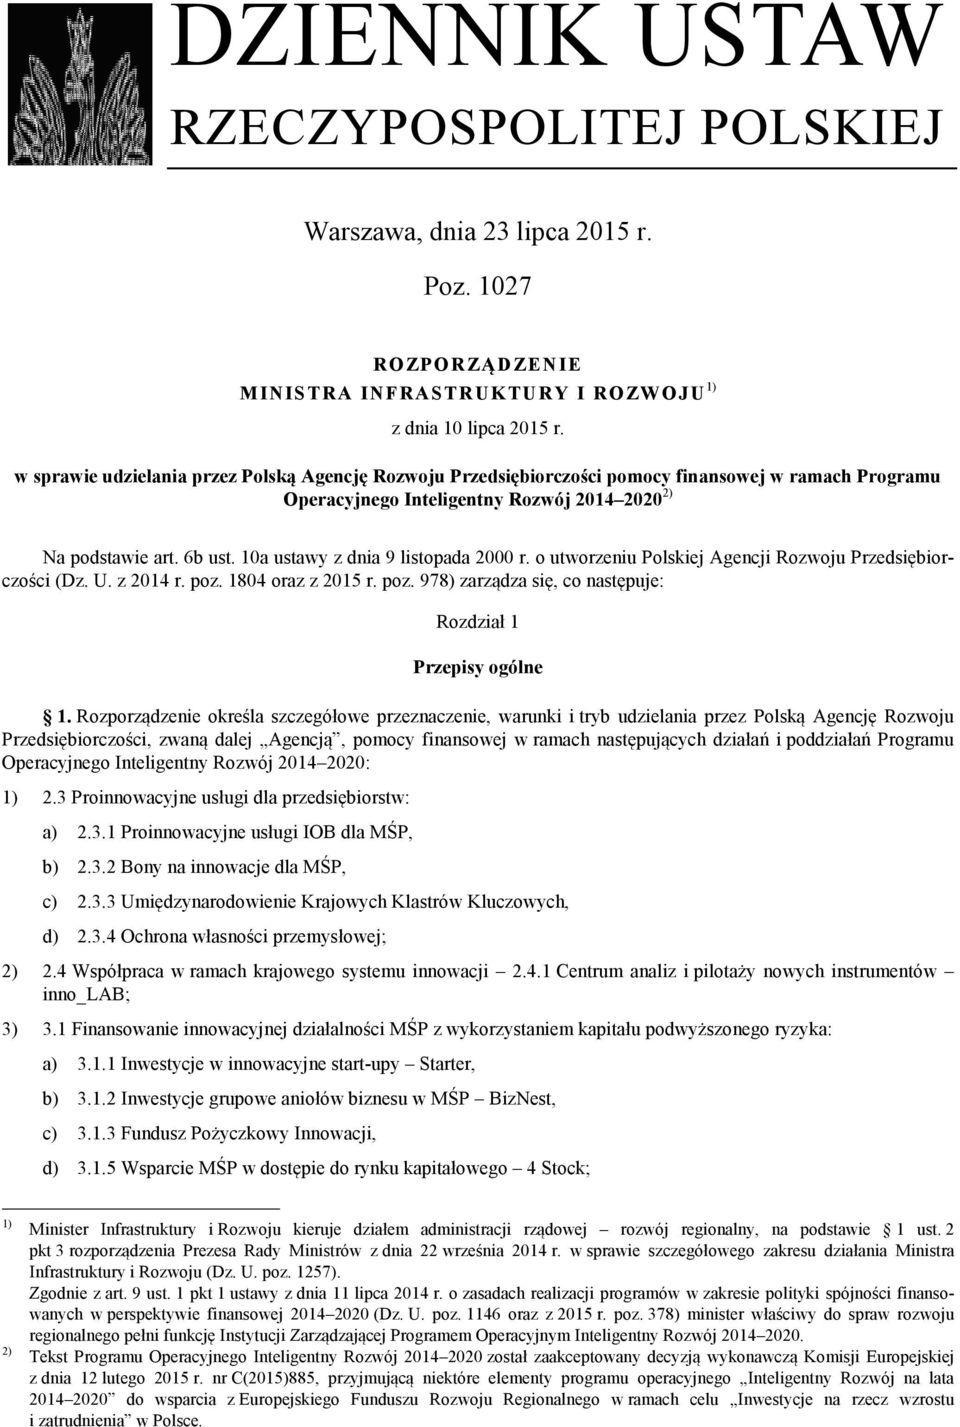 10a ustawy z dnia 9 listopada 2000 r. o utworzeniu Polskiej Agencji Rozwoju Przedsiębiorczości (Dz. U. z 2014 r. poz. 1804 oraz z 2015 r. poz. 978) zarządza się, co następuje: Rozdział 1 Przepisy ogólne 1.